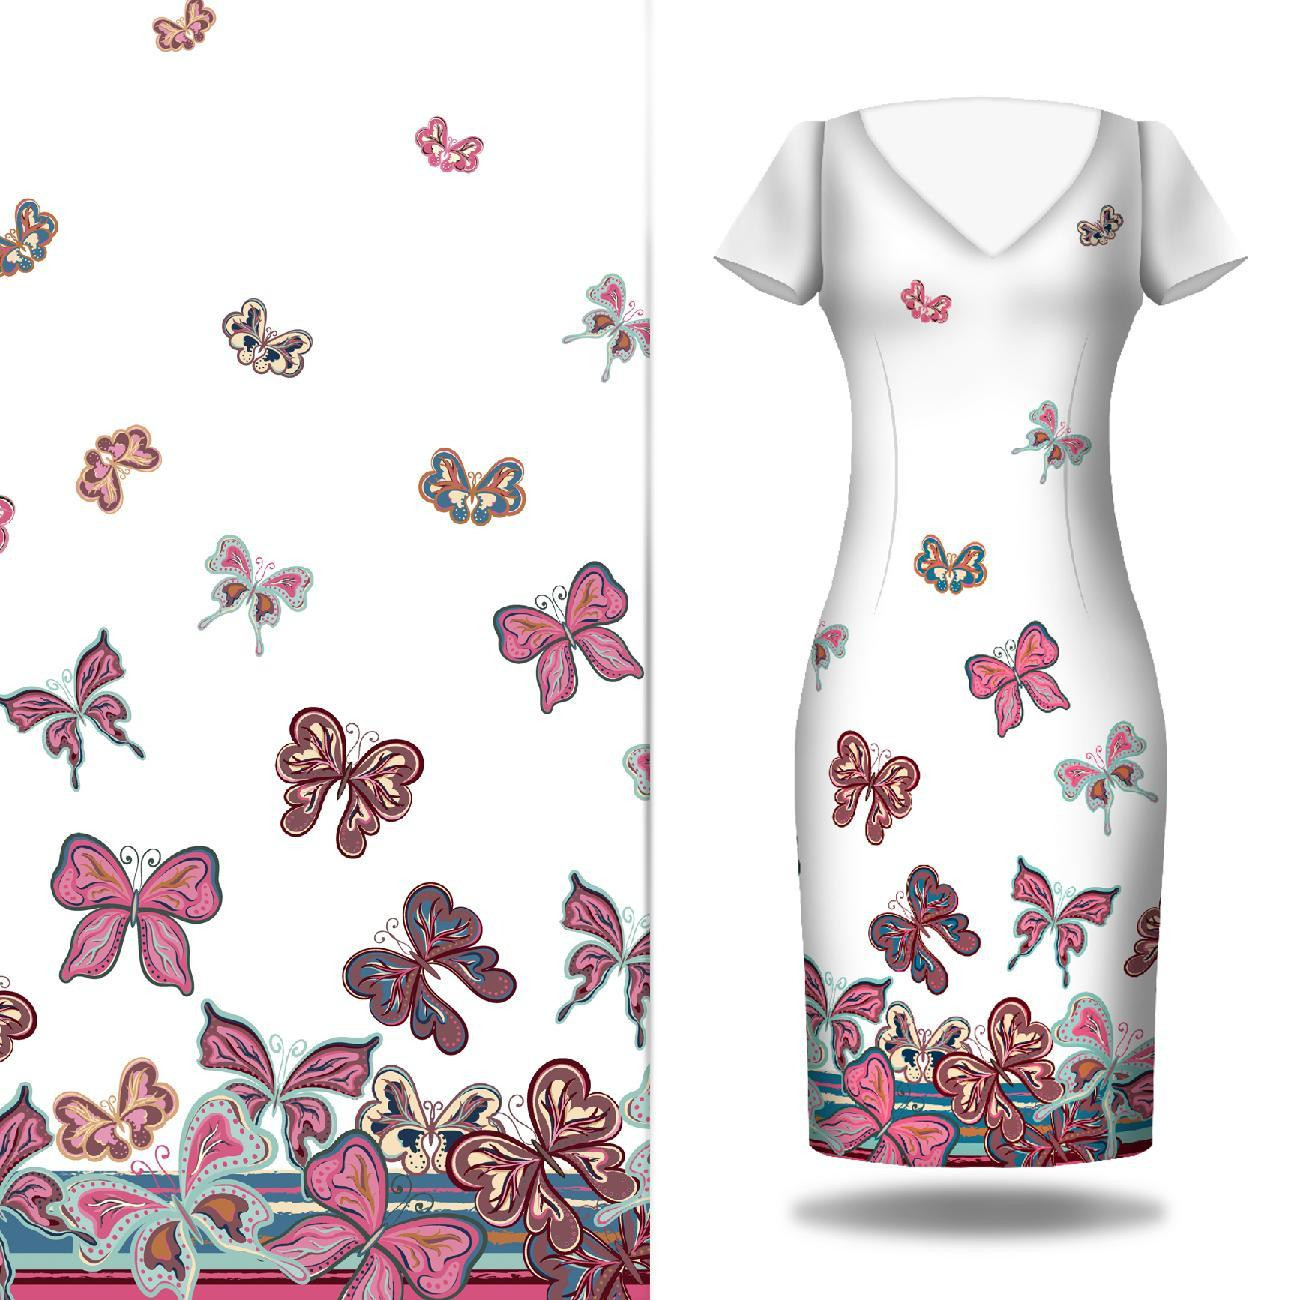 BUTTERFLIES (pattern no. 1 pink) / white - dress panel Cotton muslin